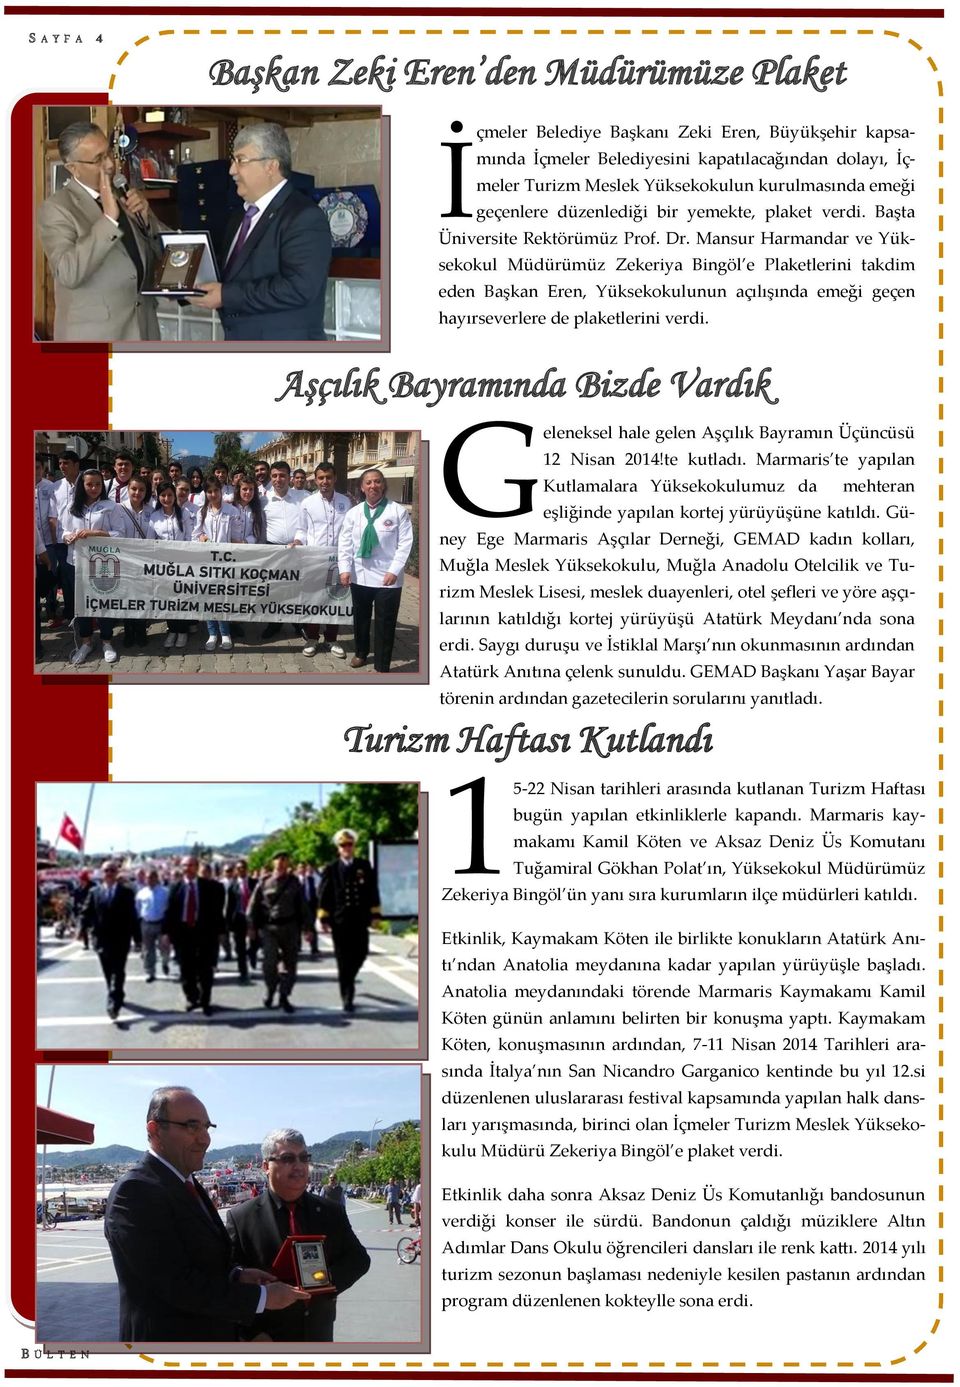 Mansur Harmandar ve Yüksekokul Müdürümüz Zekeriya Bingöl e Plaketlerini takdim eden Başkan Eren, Yüksekokulunun açılışında emeği geçen hayırseverlere de plaketlerini verdi.